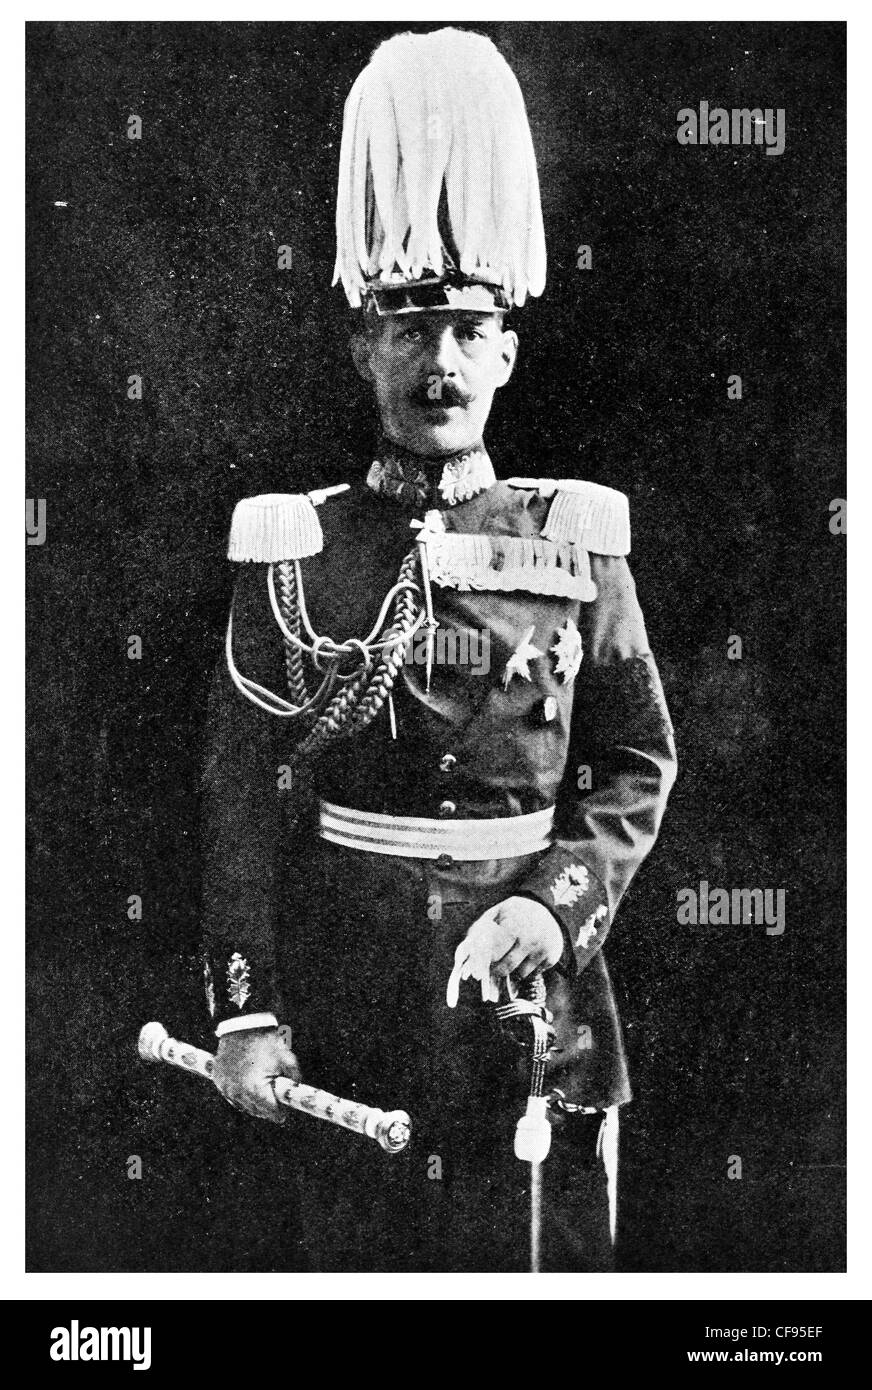 Costantino I Re degli Elleni Grecia il comandante in capo dell'esercito ellenica durante la soccombente Greco-Turkish guerra Foto Stock